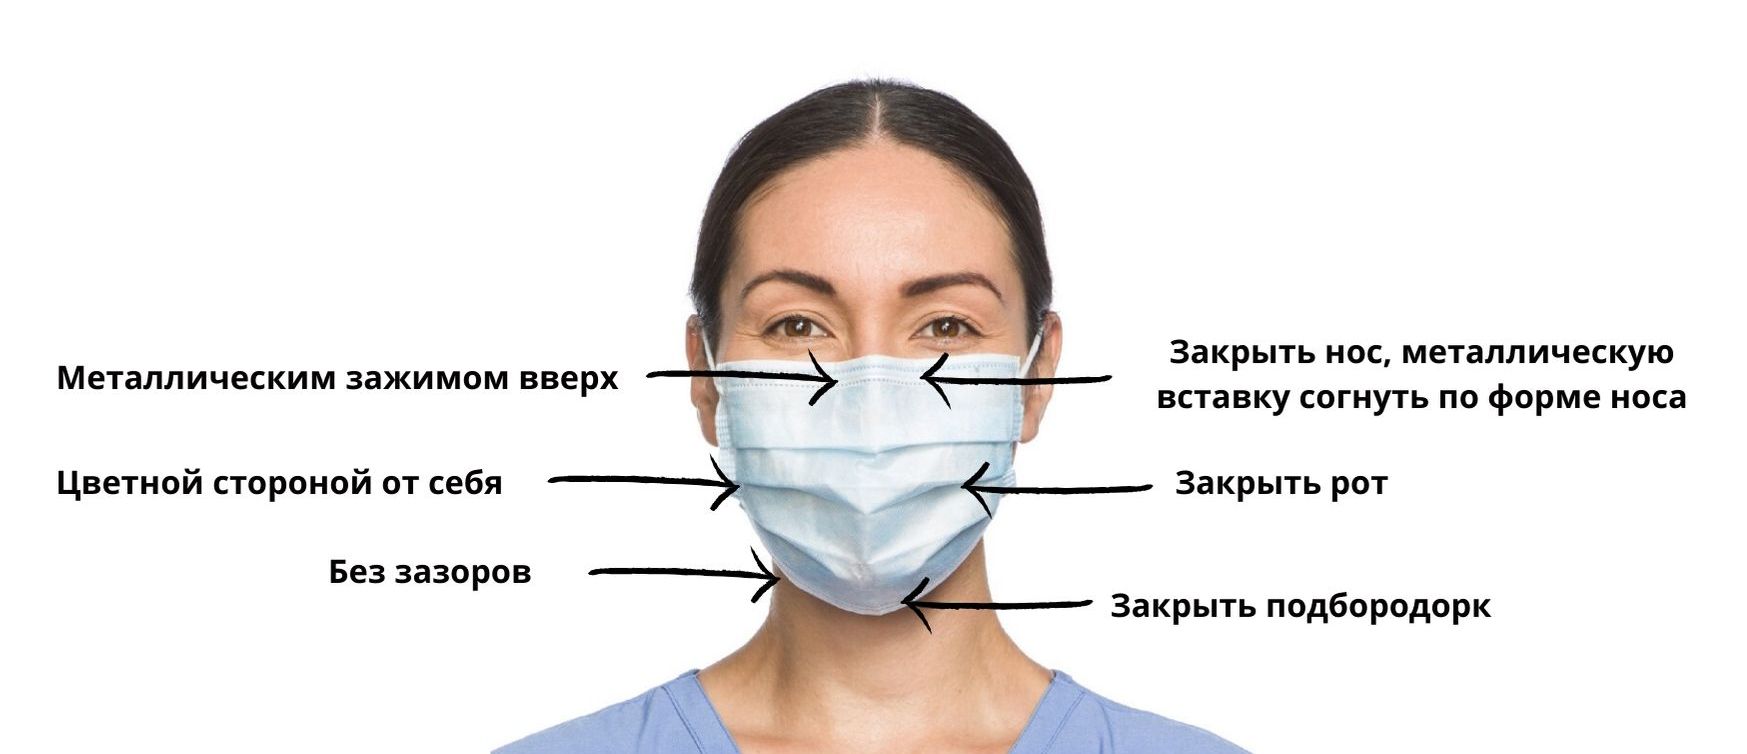 Как правильно носить маску медицинскую какой стороной к лицу фото